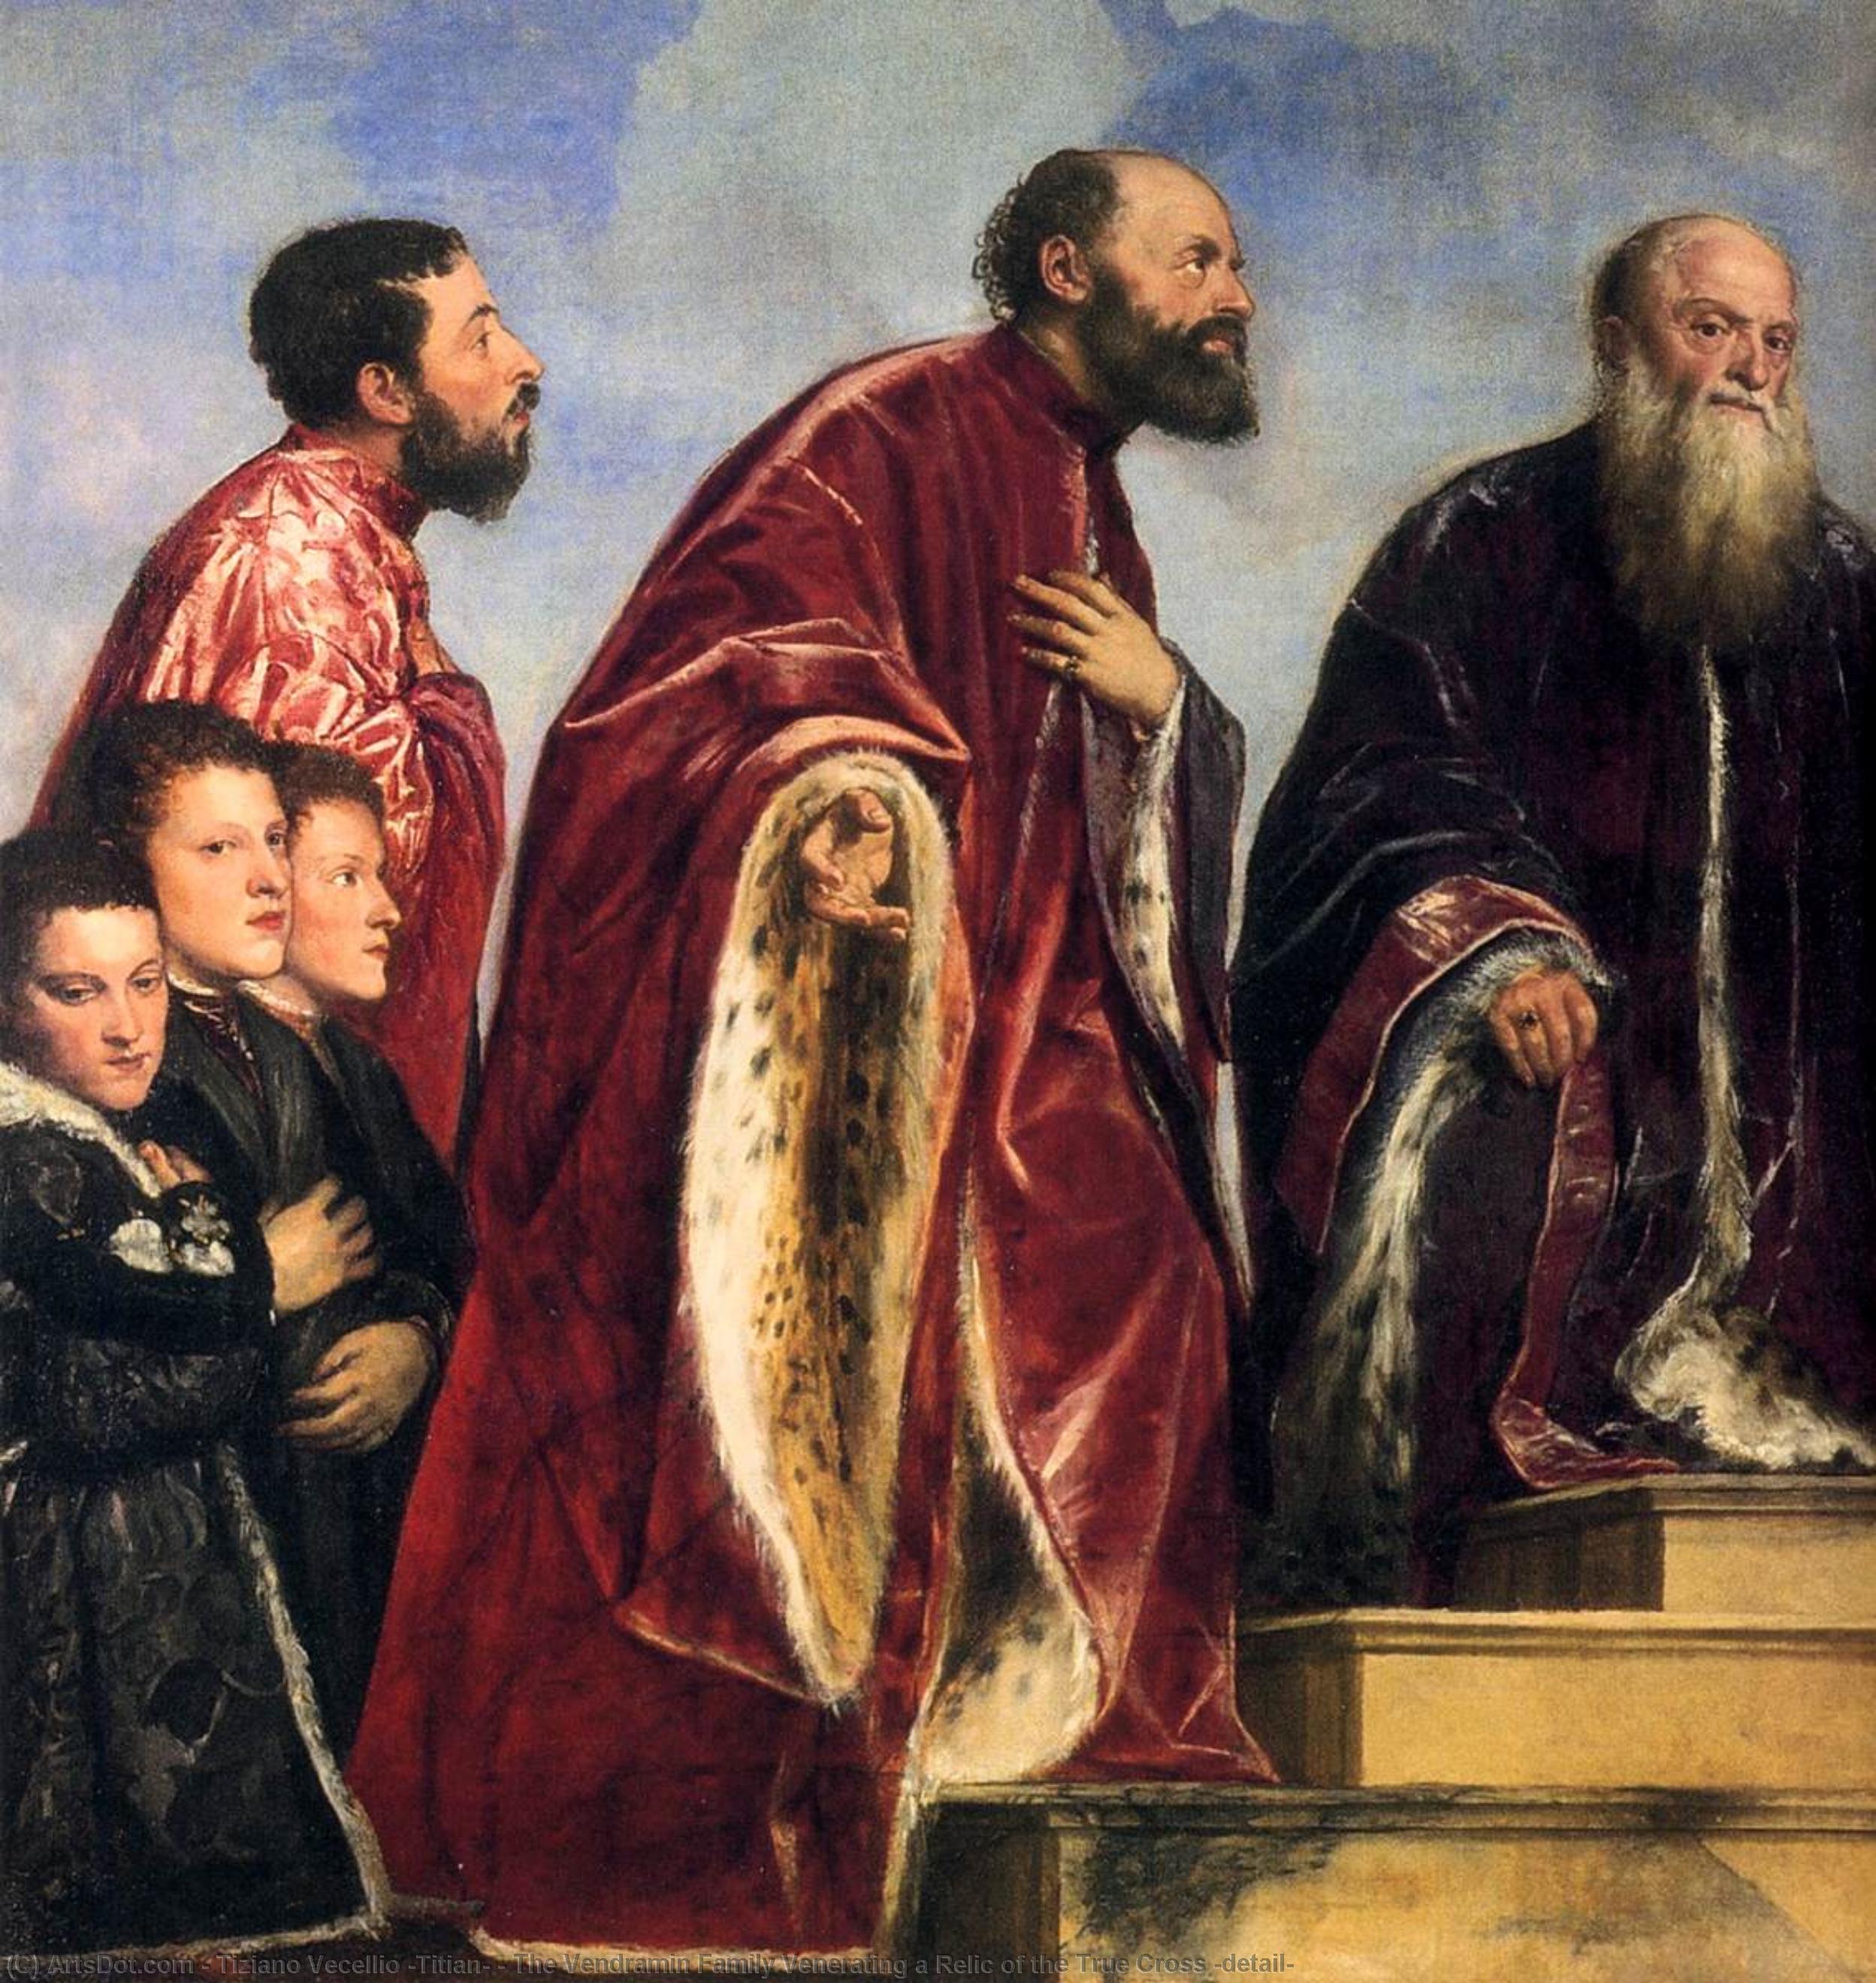 WikiOO.org - دایره المعارف هنرهای زیبا - نقاشی، آثار هنری Tiziano Vecellio (Titian) - The Vendramin Family Venerating a Relic of the True Cross (detail)